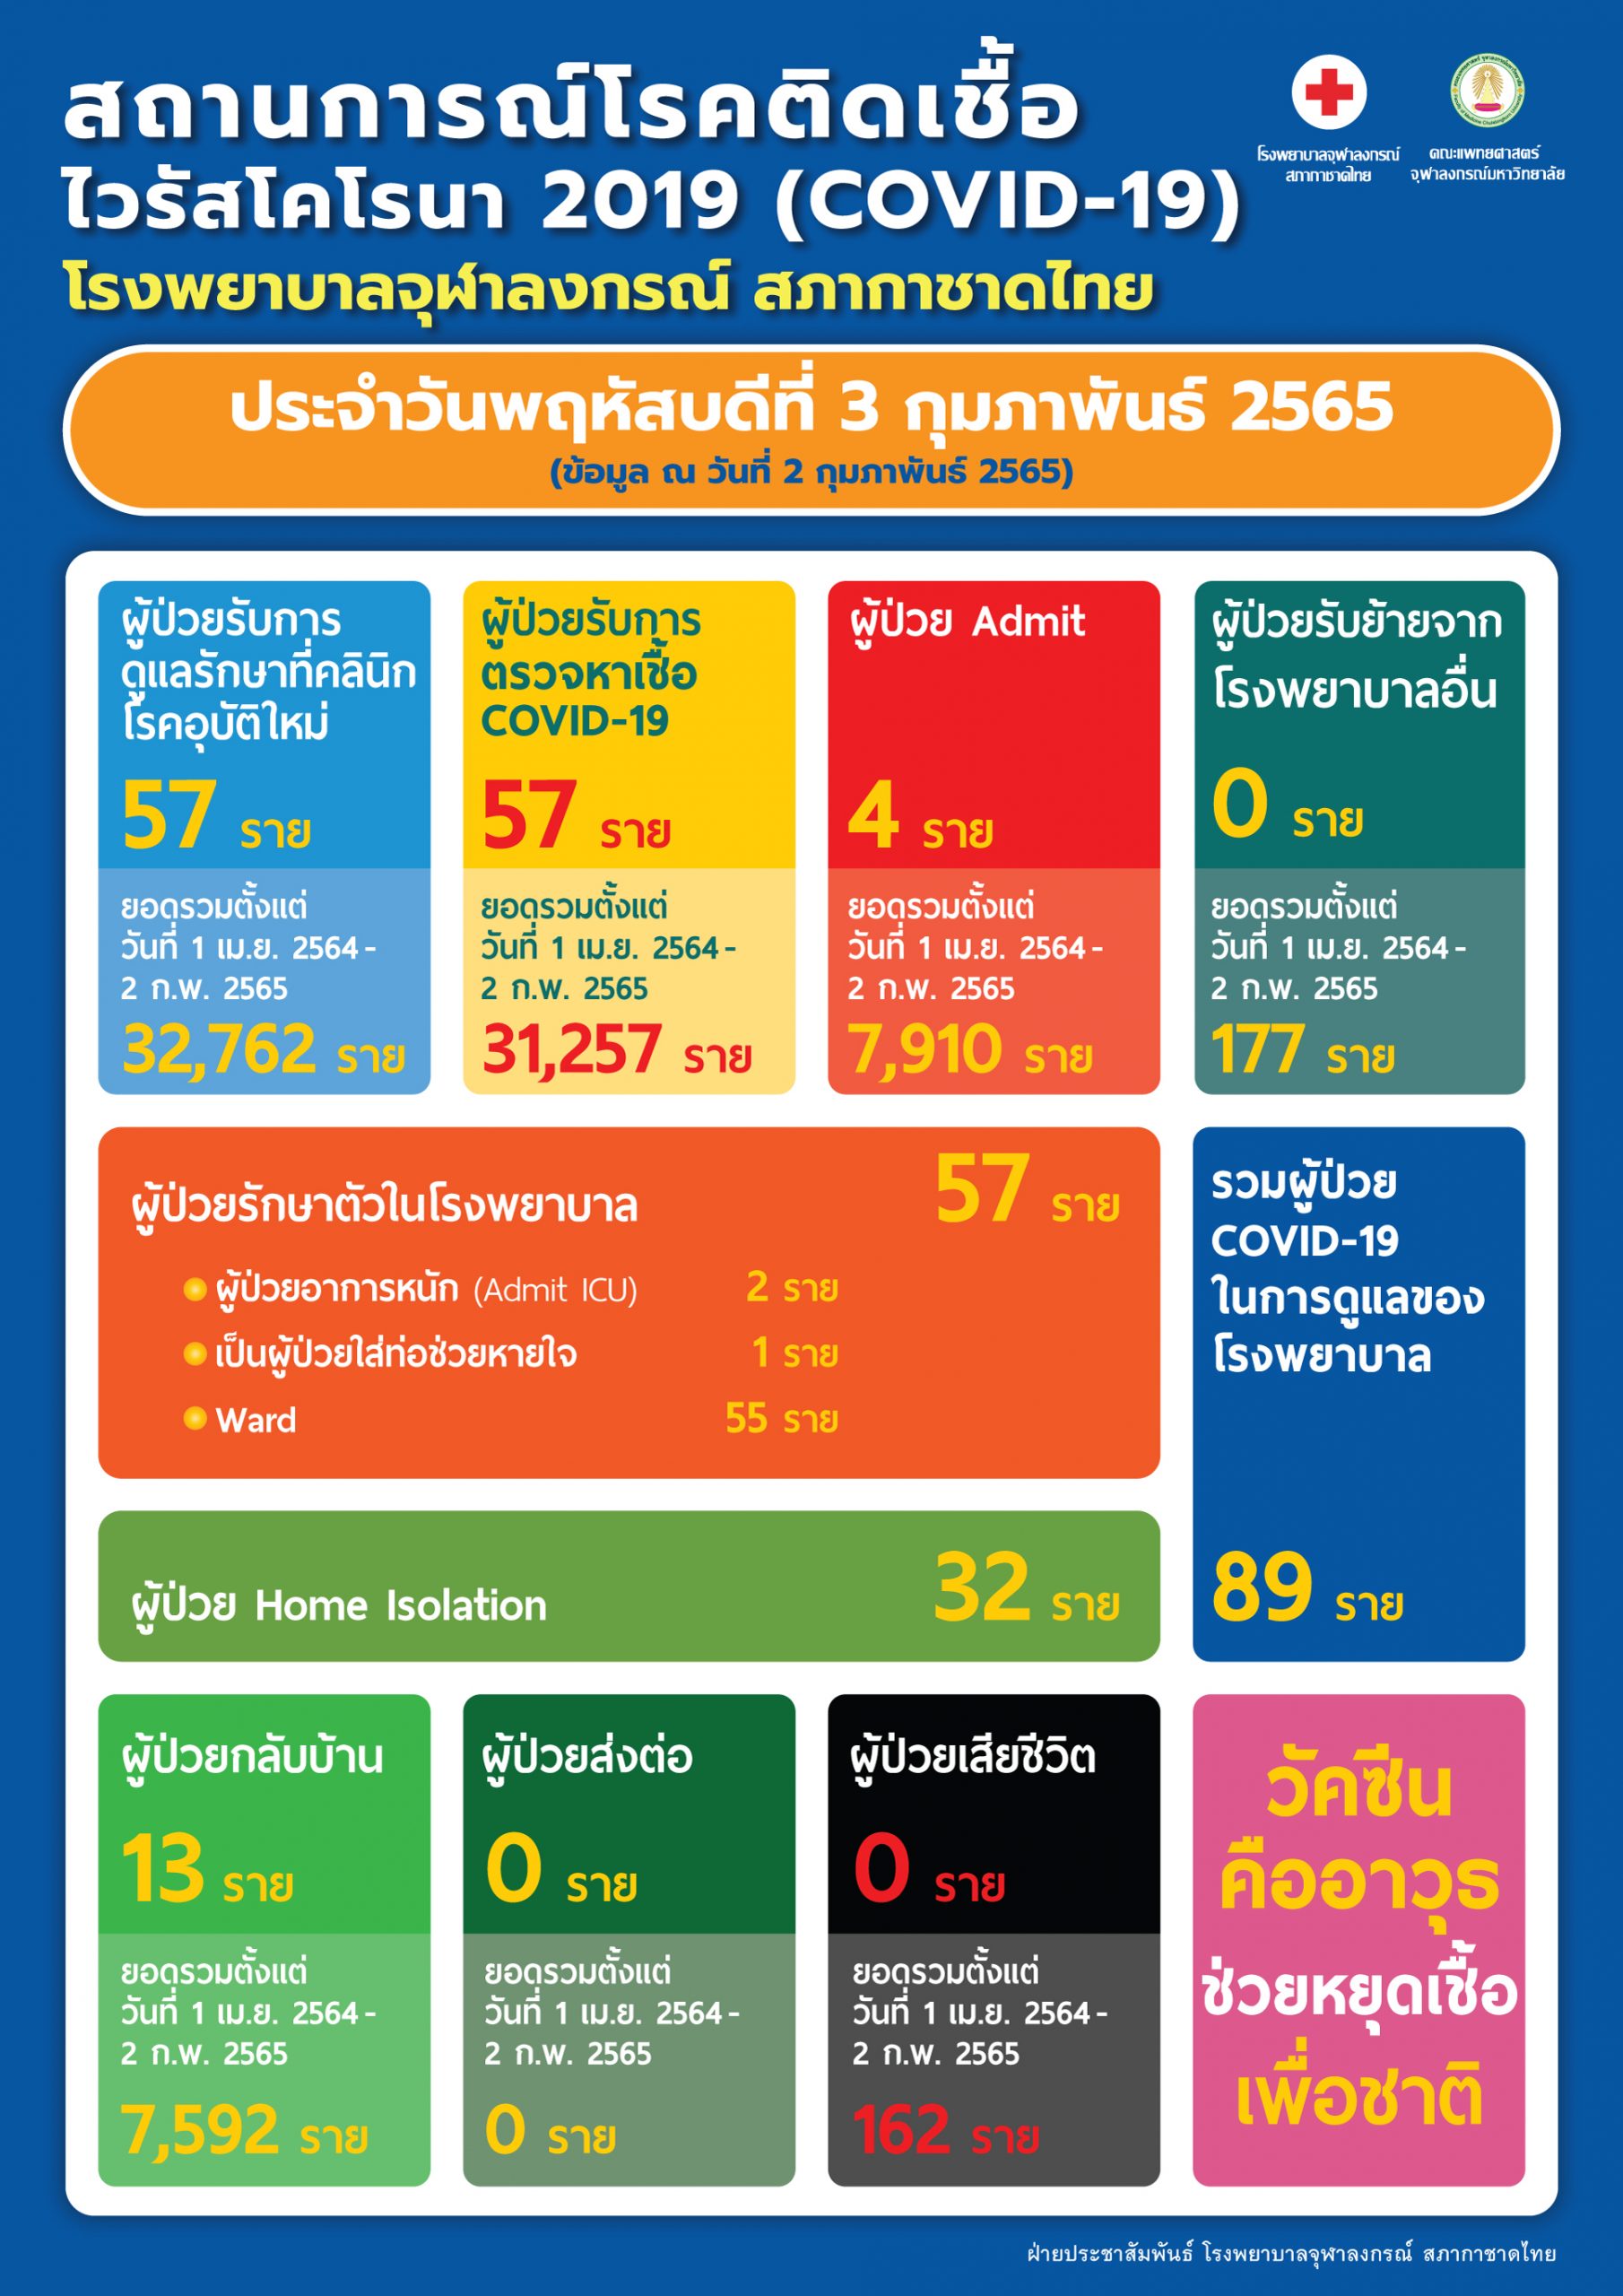 สถานการณ์โรคติดเชื้อไวรัสโคโรนา 2019 (COVID-19) โรงพยาบาลจุฬาลงกรณ์ สภากาชาดไทย ประจำวันพฤหัสบดีที่ 3 กุมภาพันธ์ 2565